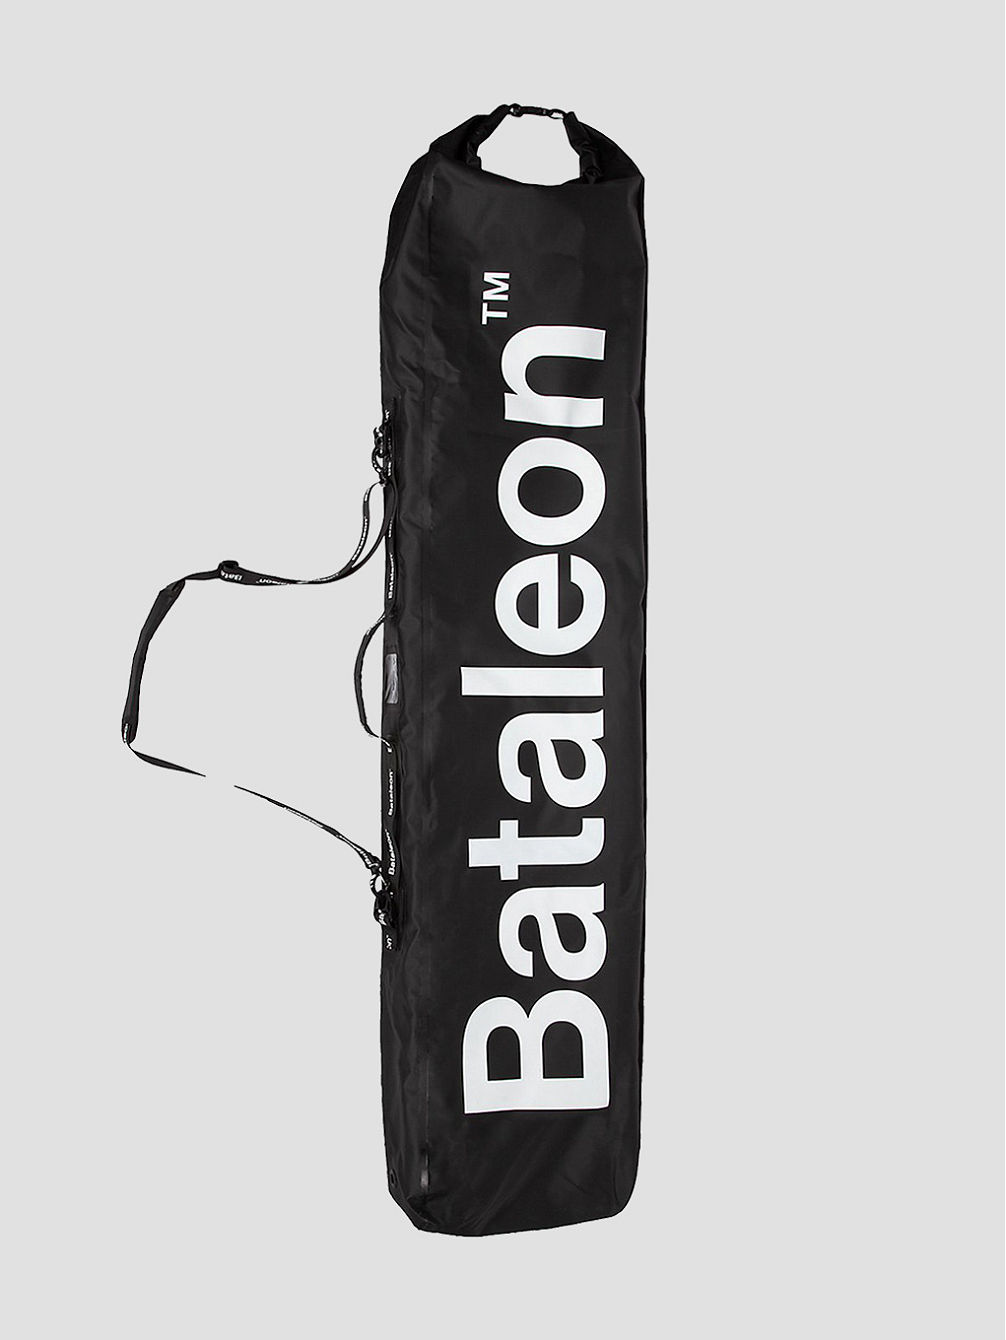 Getaway Snowboard Bag